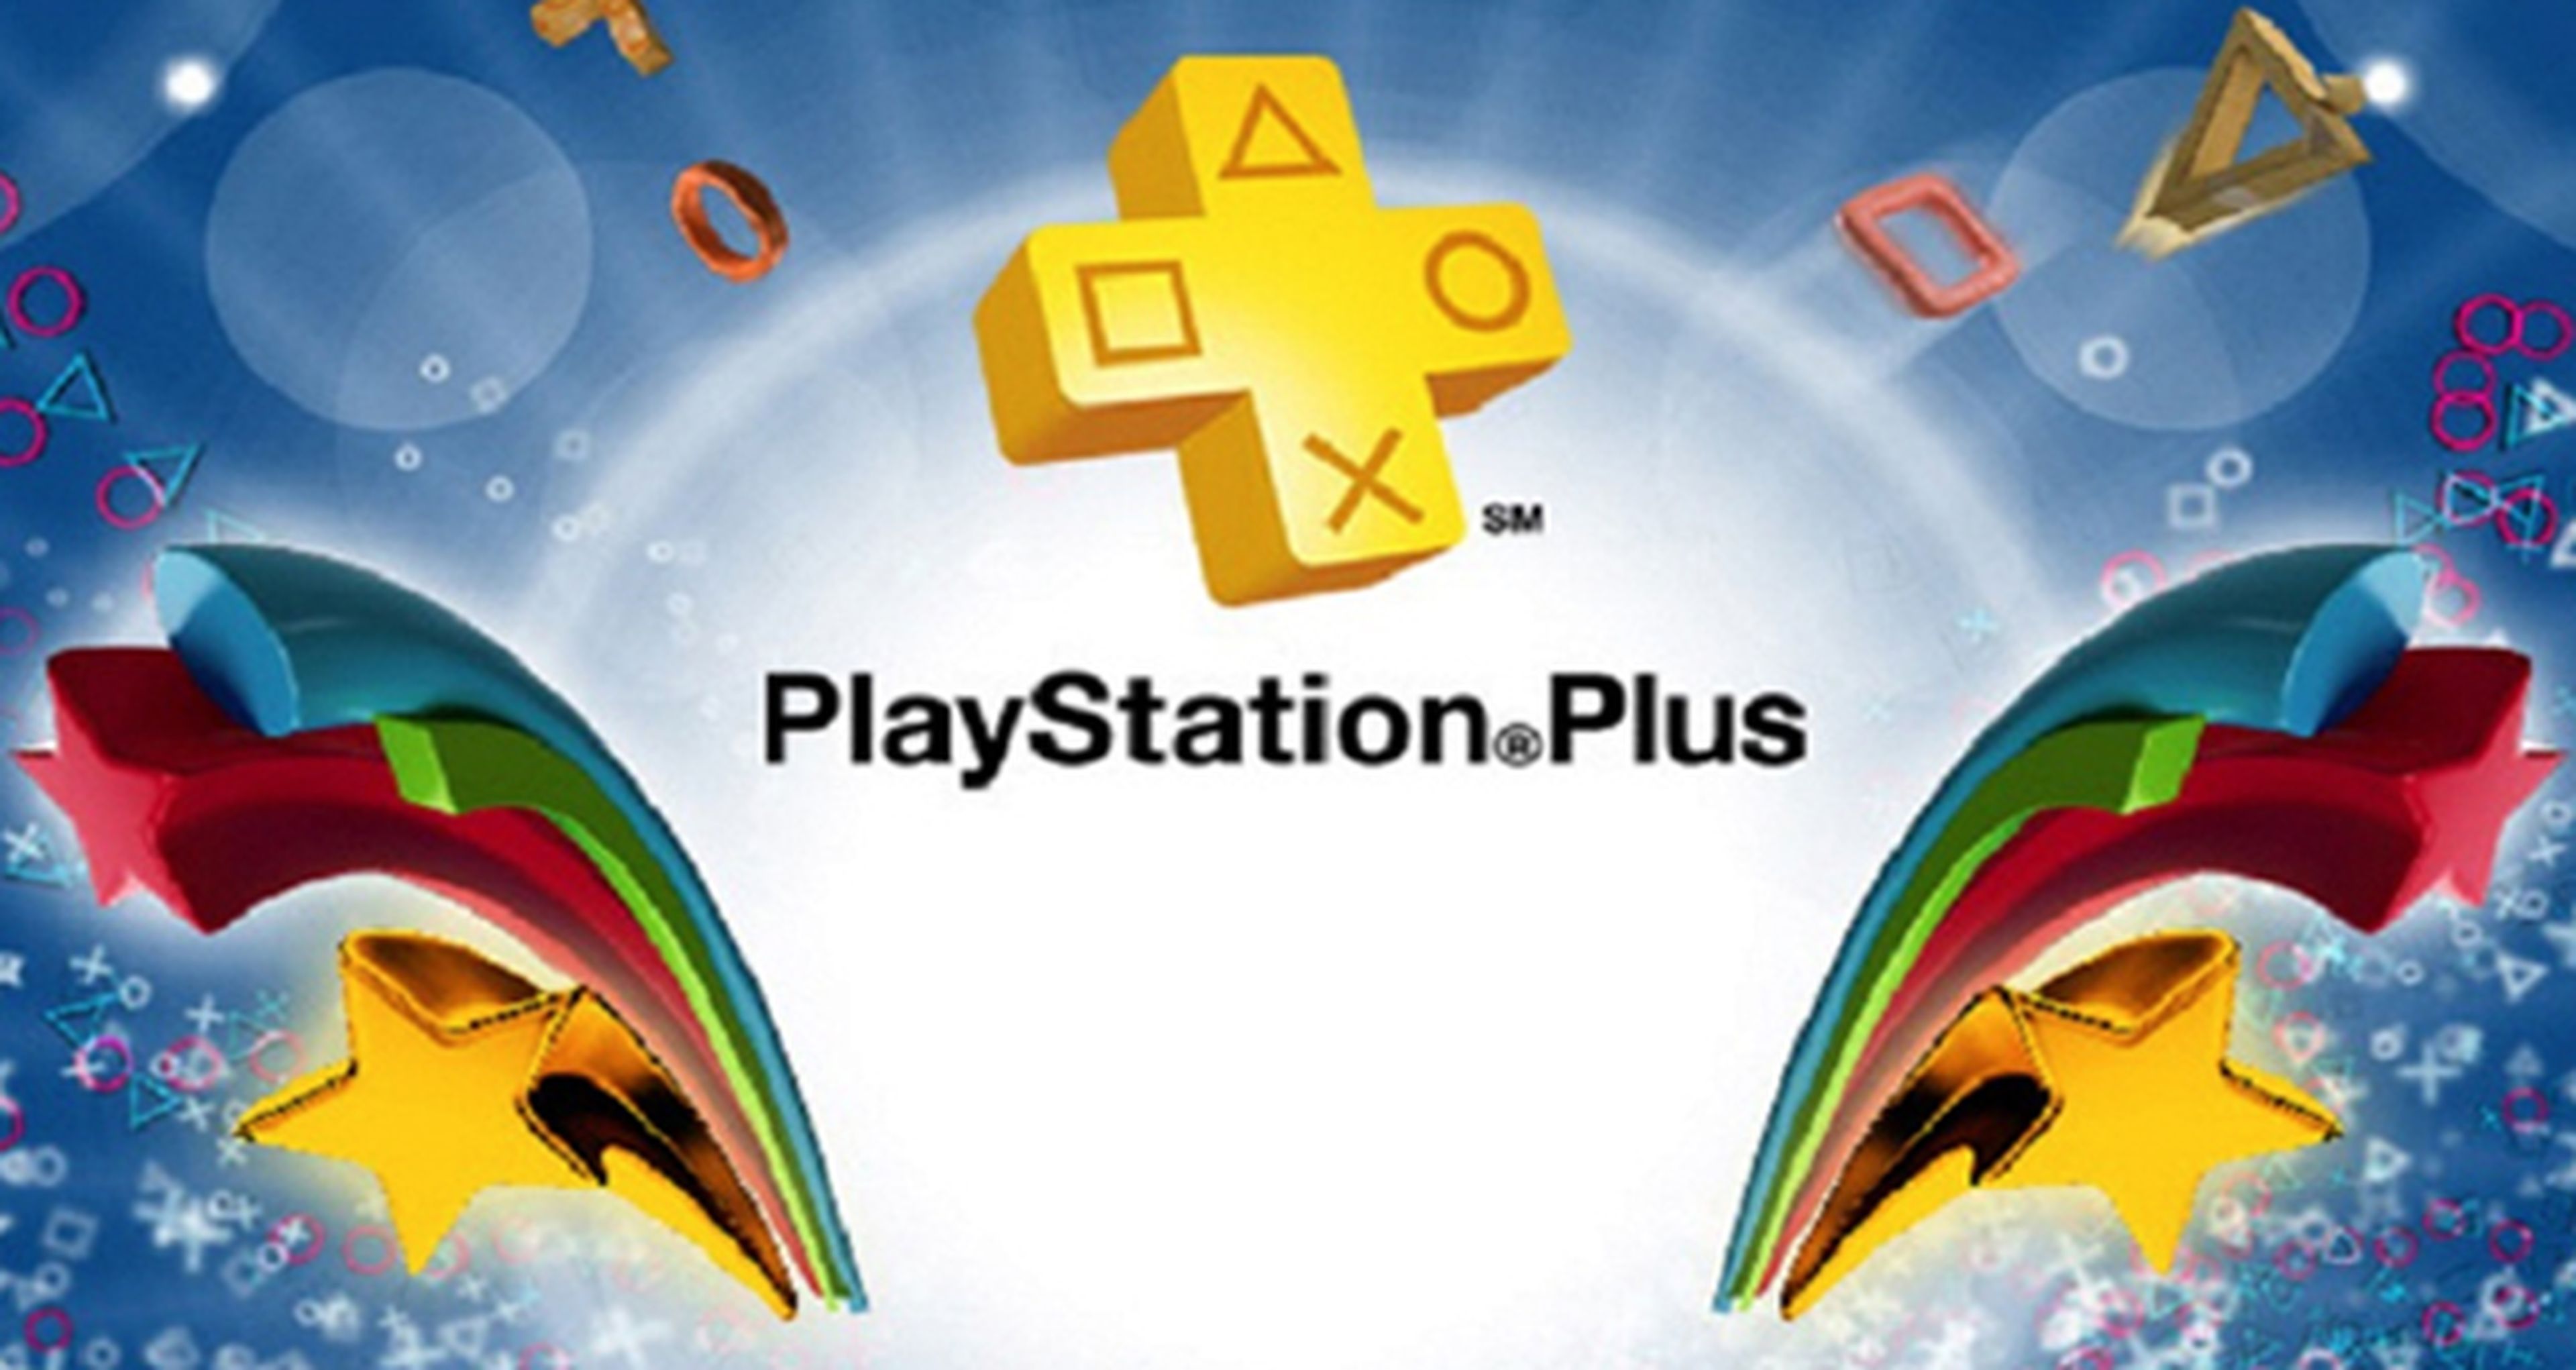 Sony detalla cómo consiguen ofrecer juegos gratis en PSN+